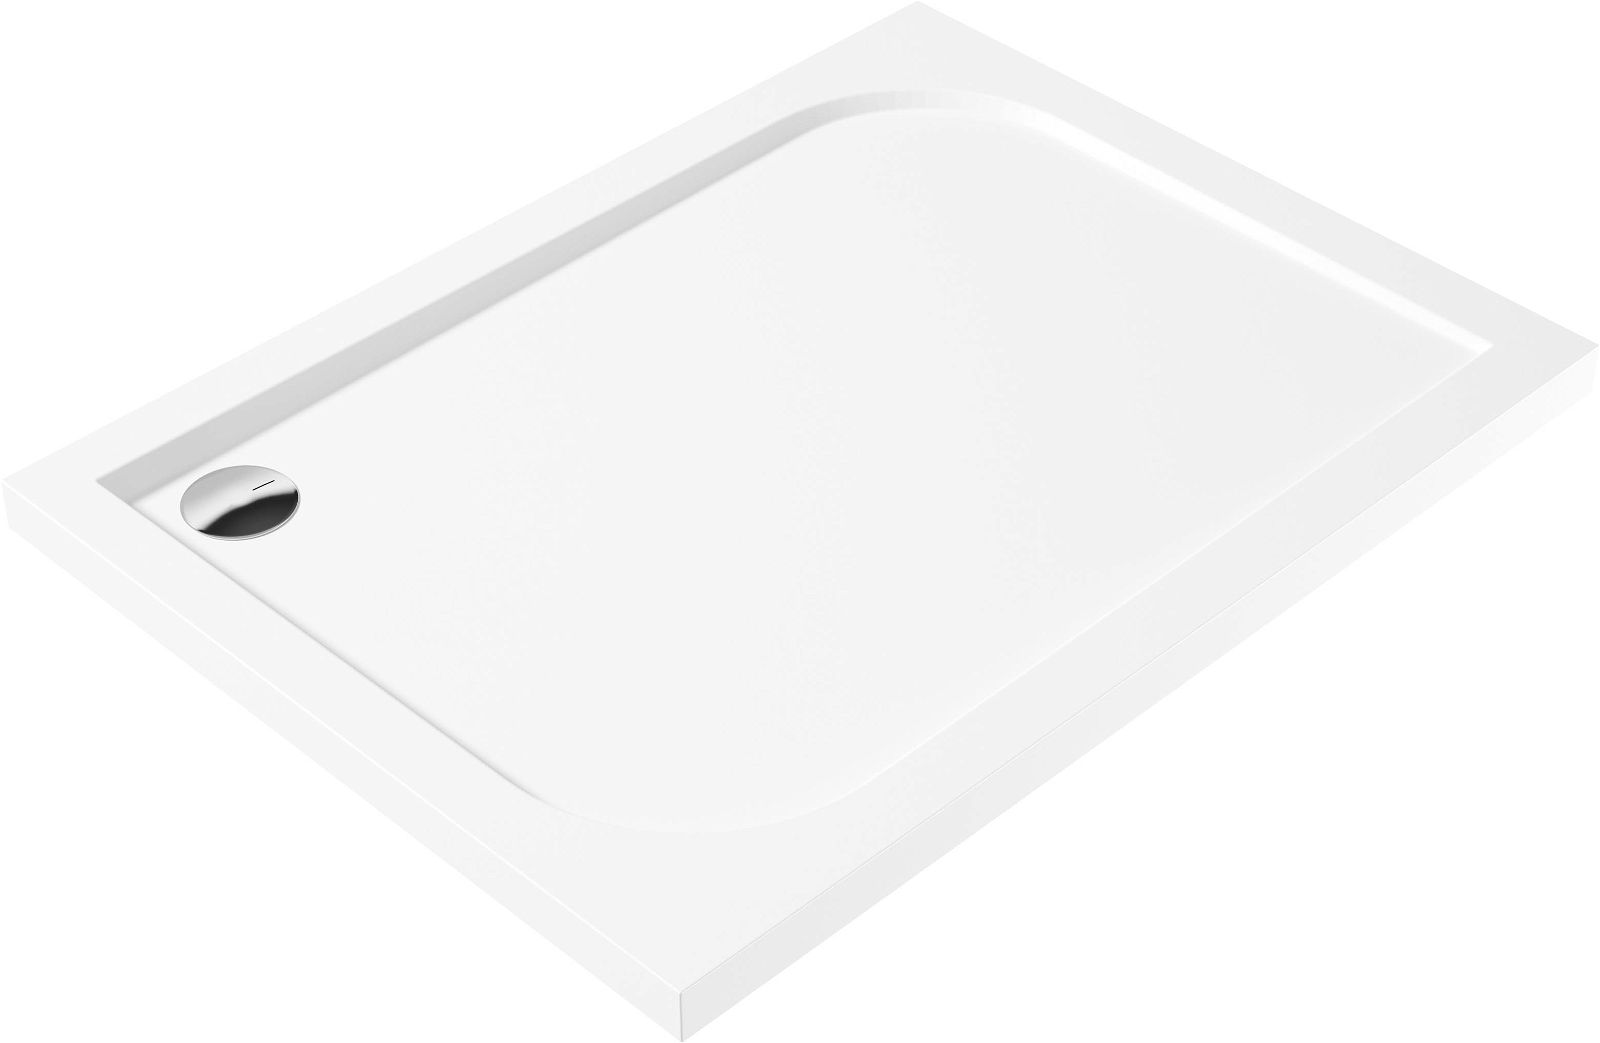 Acrylic shower tray, rectangular, 80x120 cm - KTK_044B - Główne zdjęcie produktowe